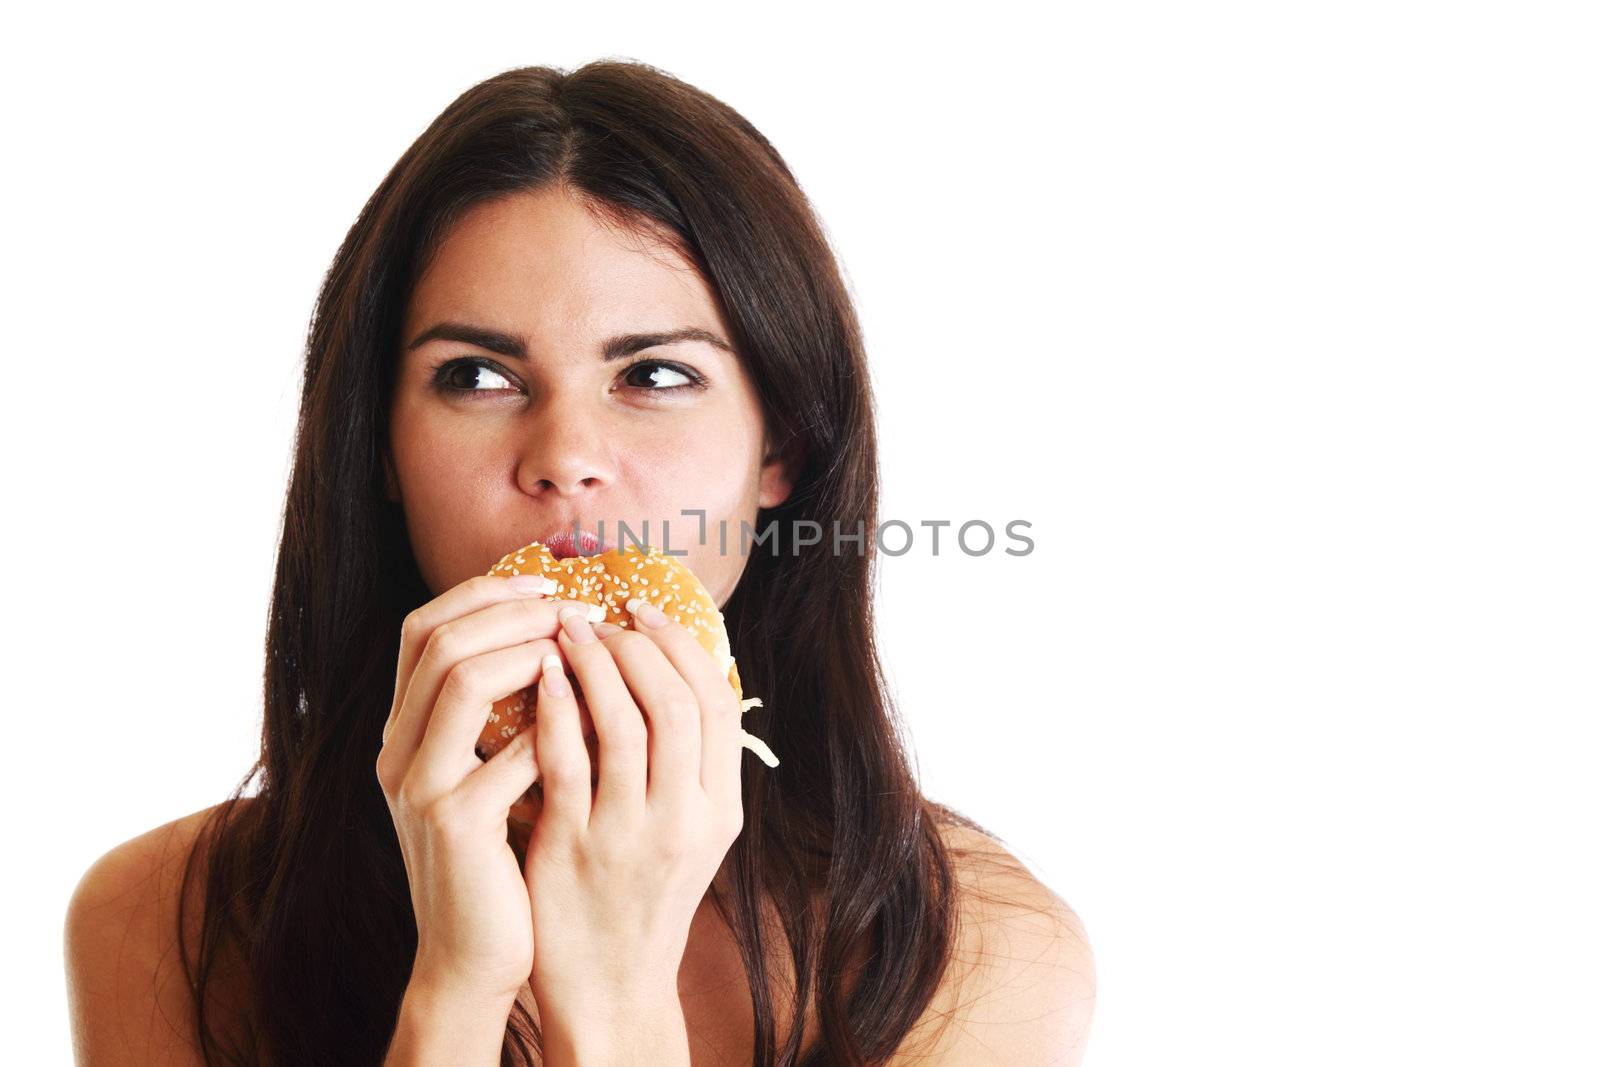 woman eat burger by Yellowj